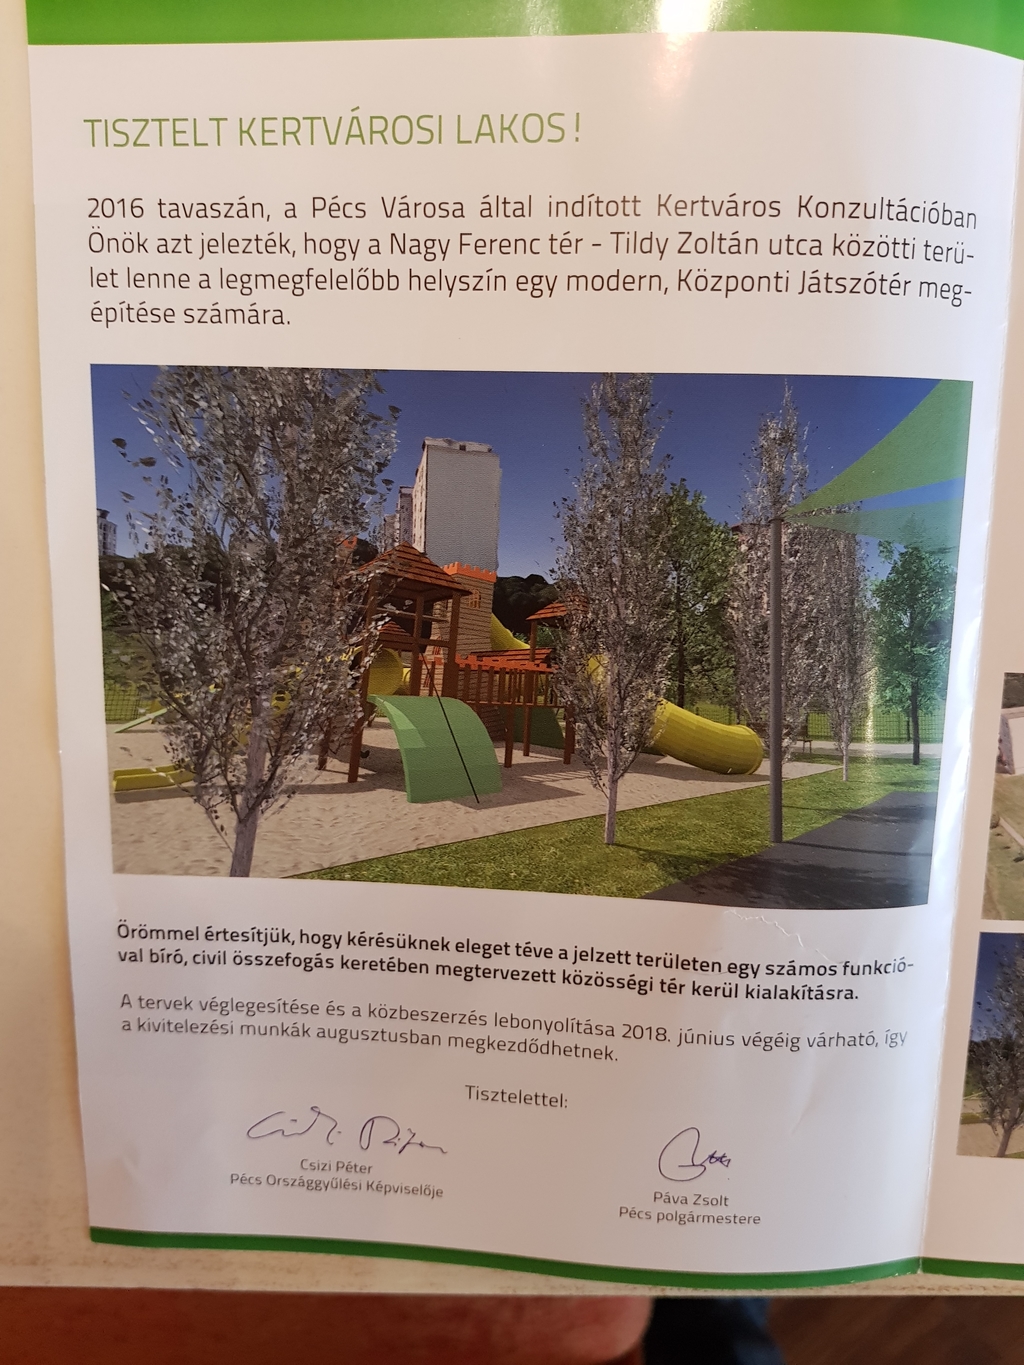 Pécsen éppen nincs mit átadni, ezért egy olyan játszótérről adott ki füzetkét a fideszes jelölt, aminek a terveit is csak a nyáron véglegesítik